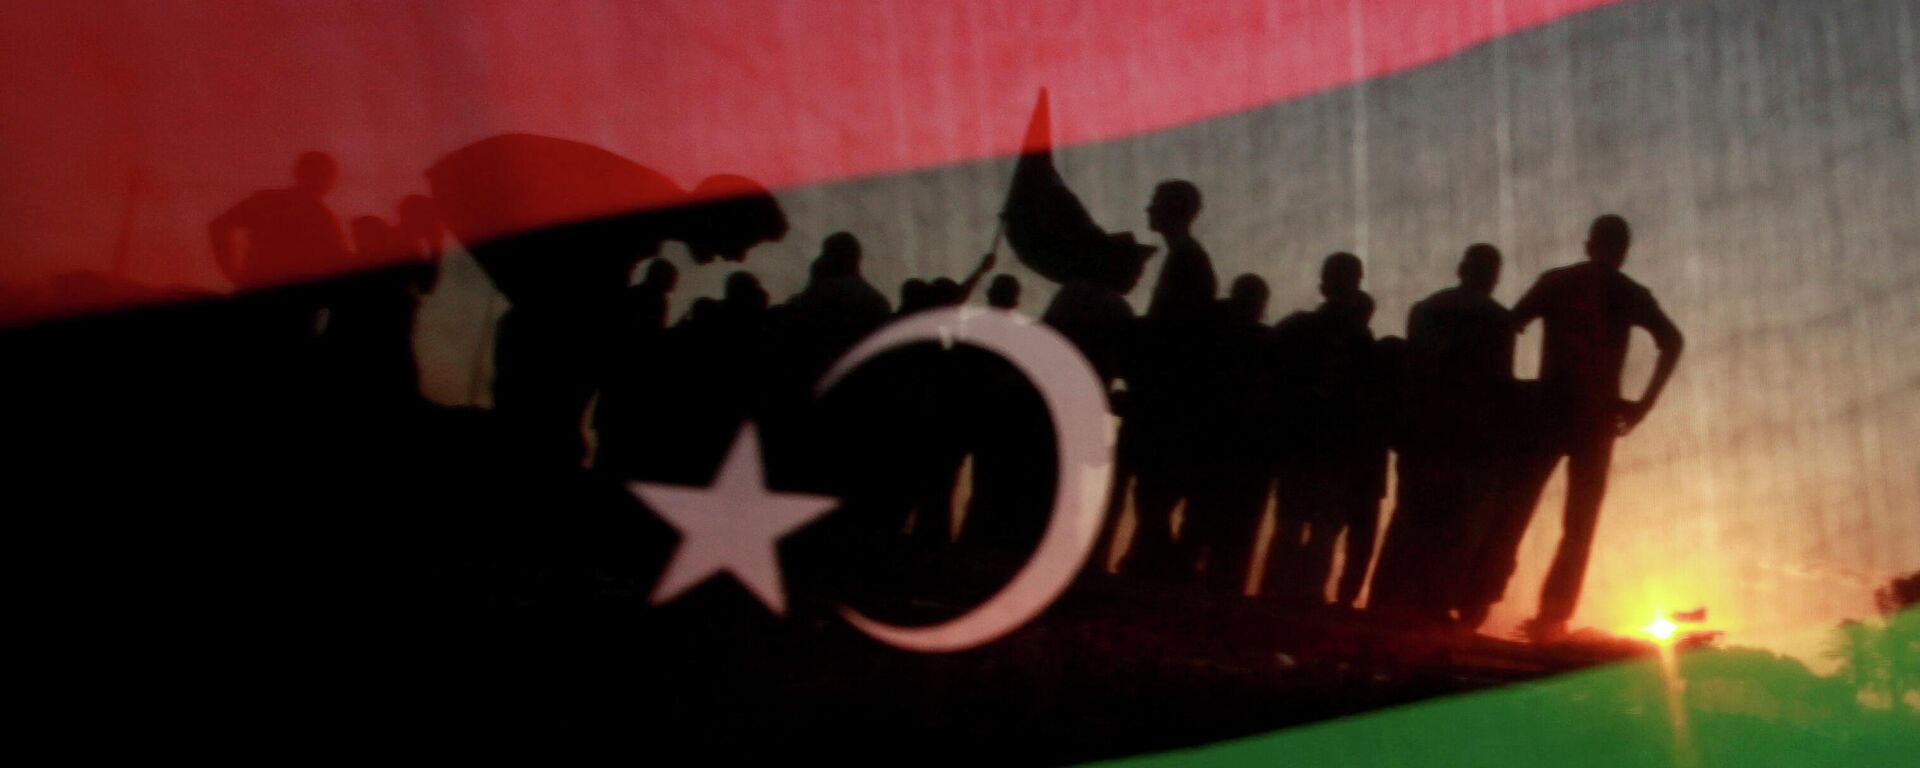 La bandera de Libia - Sputnik Mundo, 1920, 09.07.2021